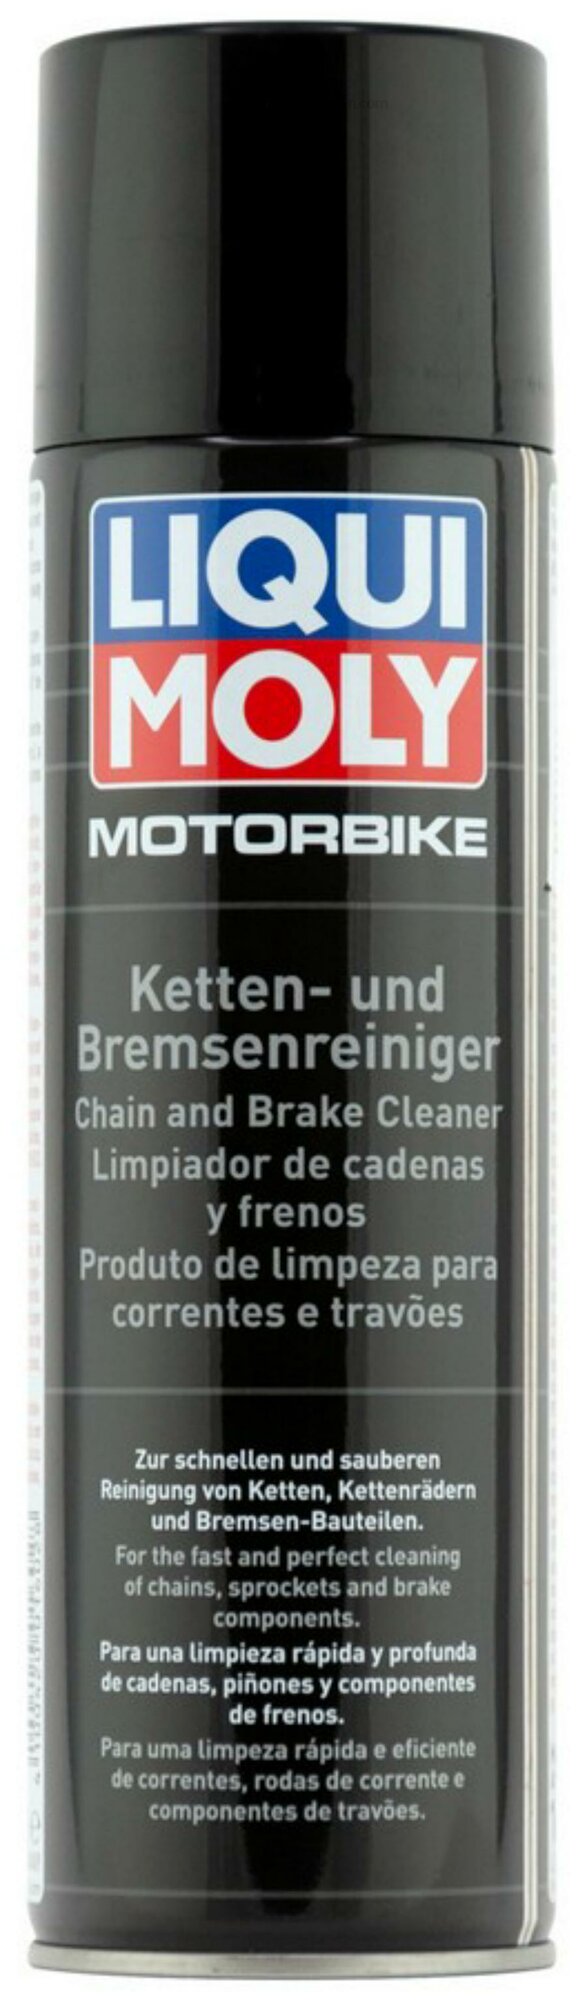 LIQUI MOLY 1602 Очиститель приводной цепи мотоцикла Motorbike Ketten-Reiniger 0,5л